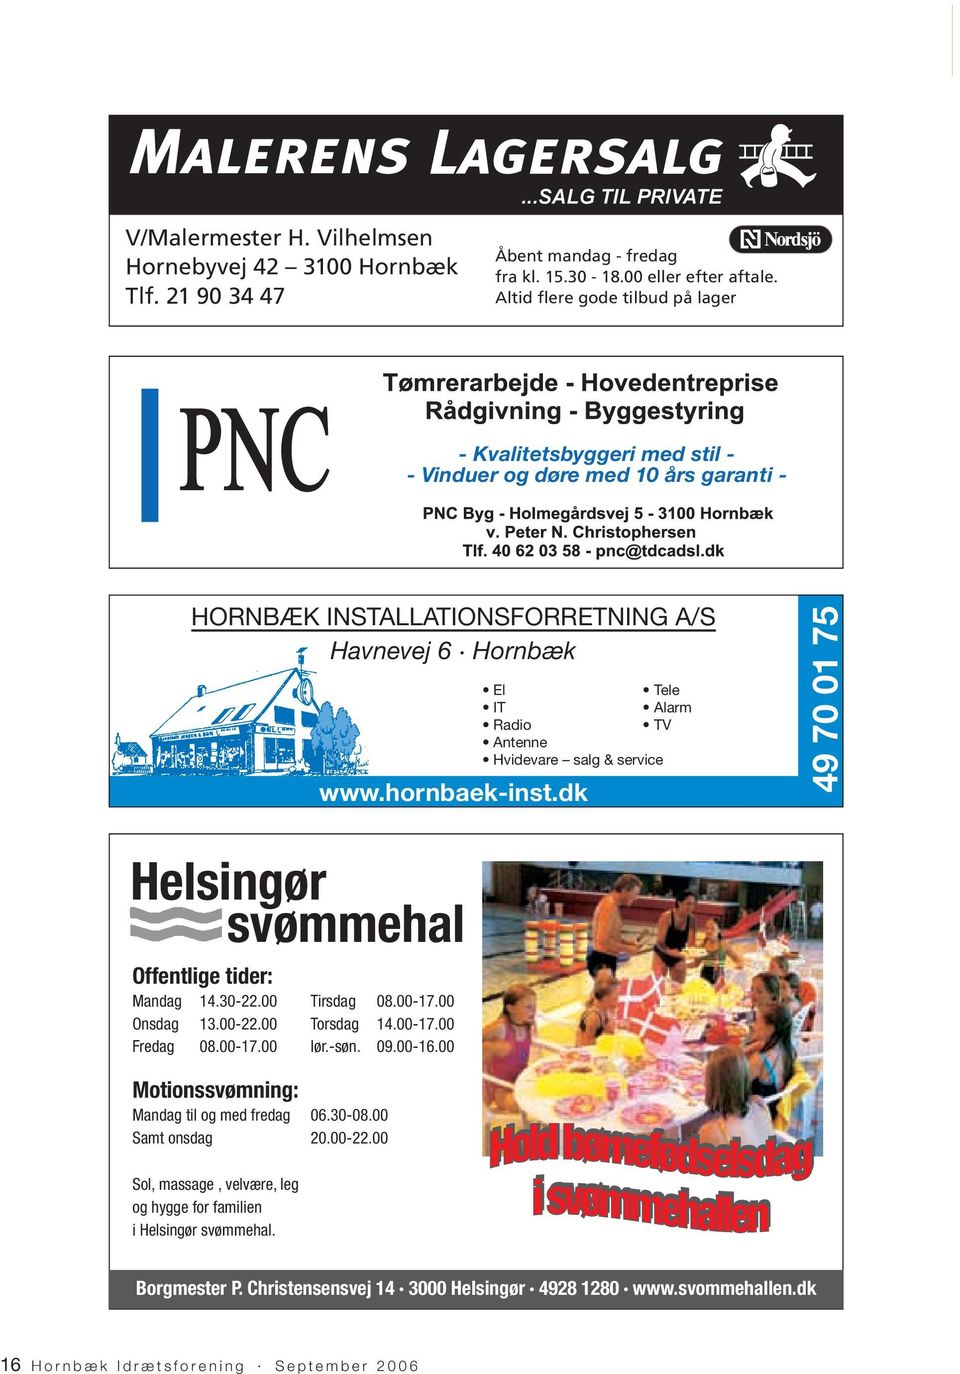 Hvidevare salg & service www.hornbaek-inst.dk 49 70 01 75 Helsingør svømmehal Offentlige tider: Mandag 14.30-22.00 Tirsdag 08.00-17.00 Onsdag 13.00-22.00 Torsdag 14.00-17.00 Fredag 08.00-17.00 lør.